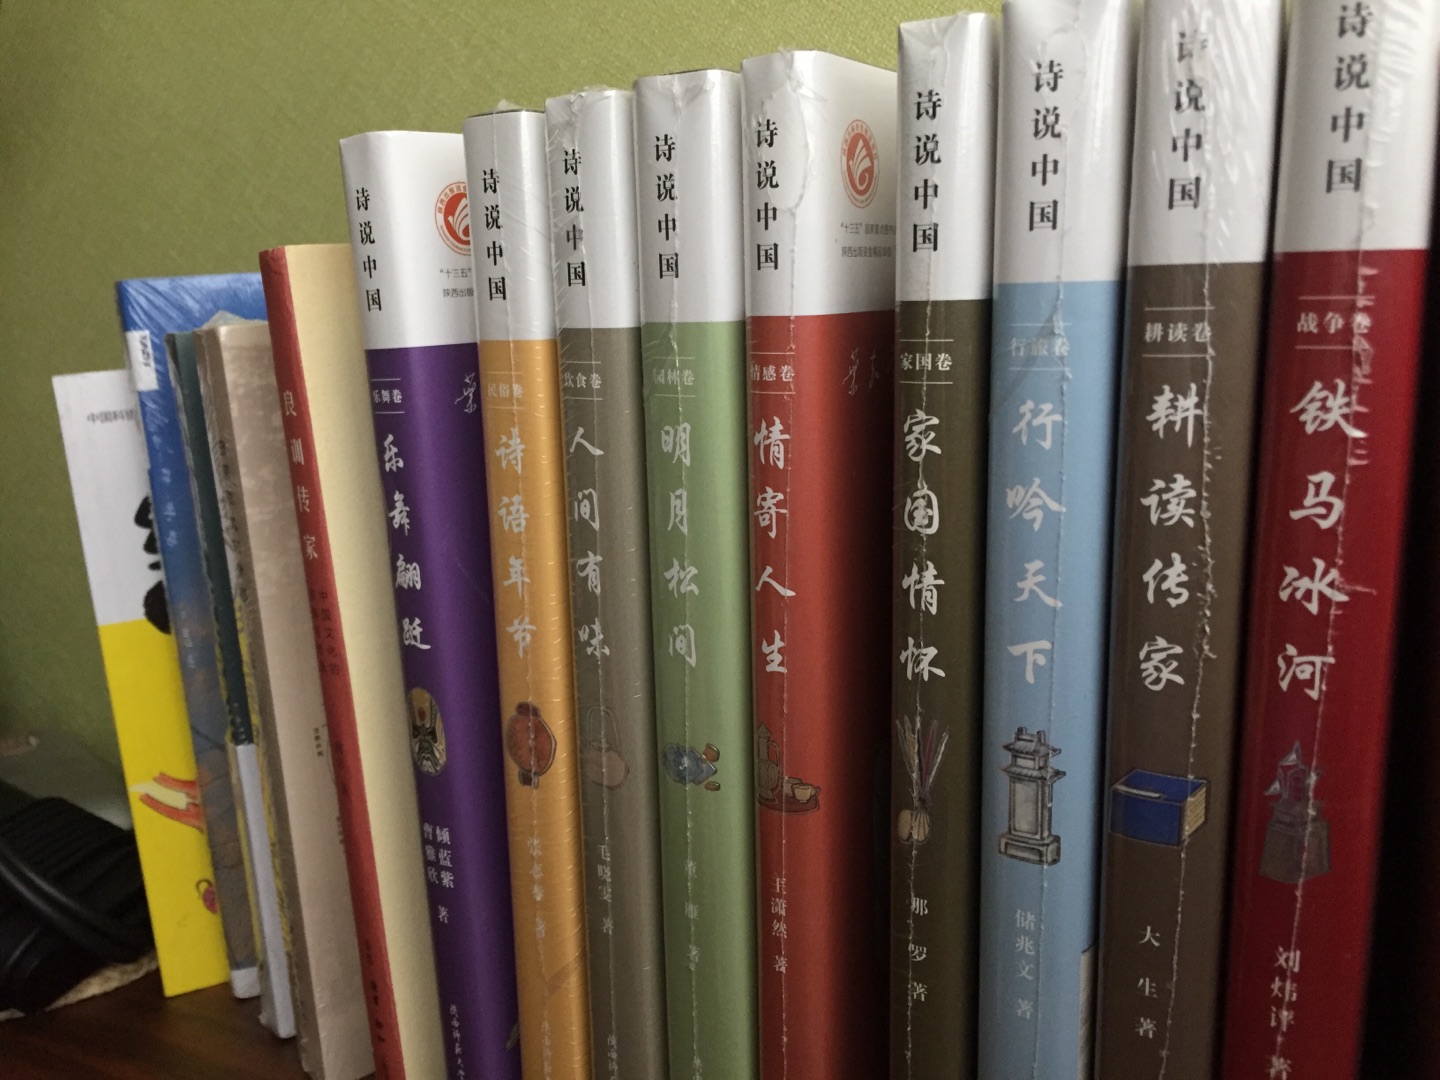 一口气买了全套，喜欢中国诗歌，在网上看到有这类书，趁着活动全部买回来，慢慢看！